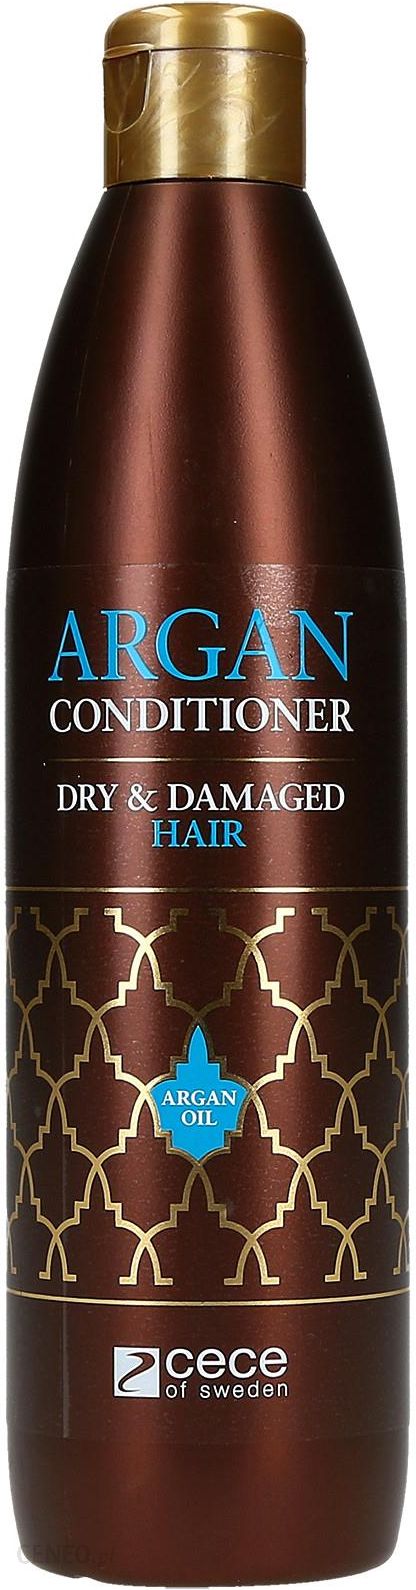 cece of sweden argan szampon do włosów 300 ml